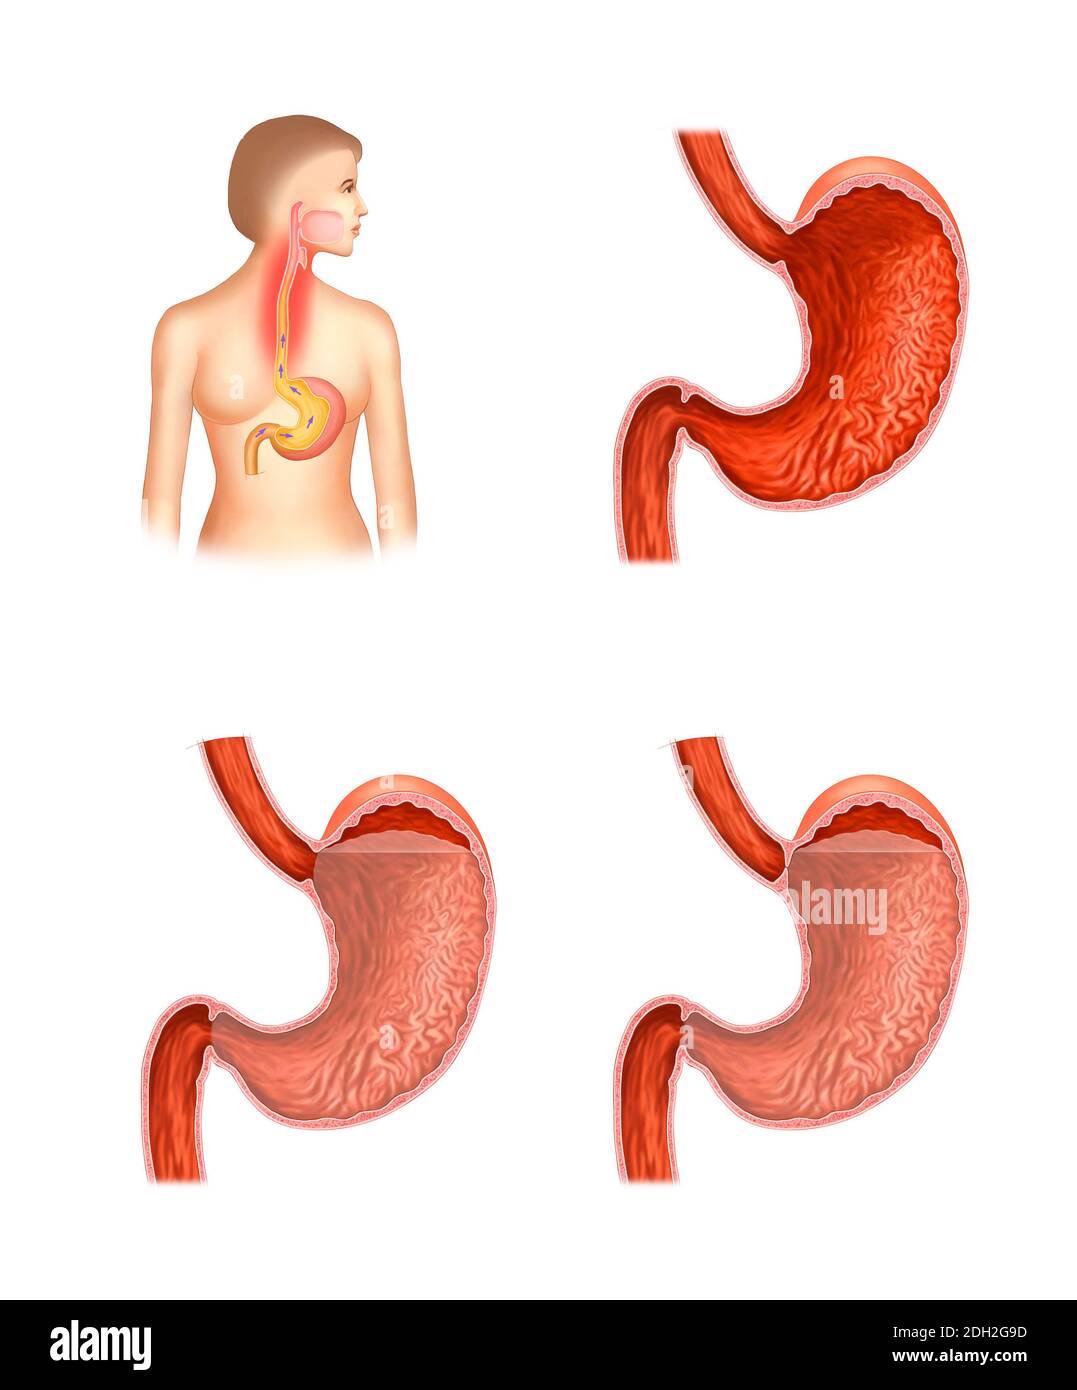 Illustrazione anatomica della malattia da reflusso esofageo e dello stomaco Foto Stock